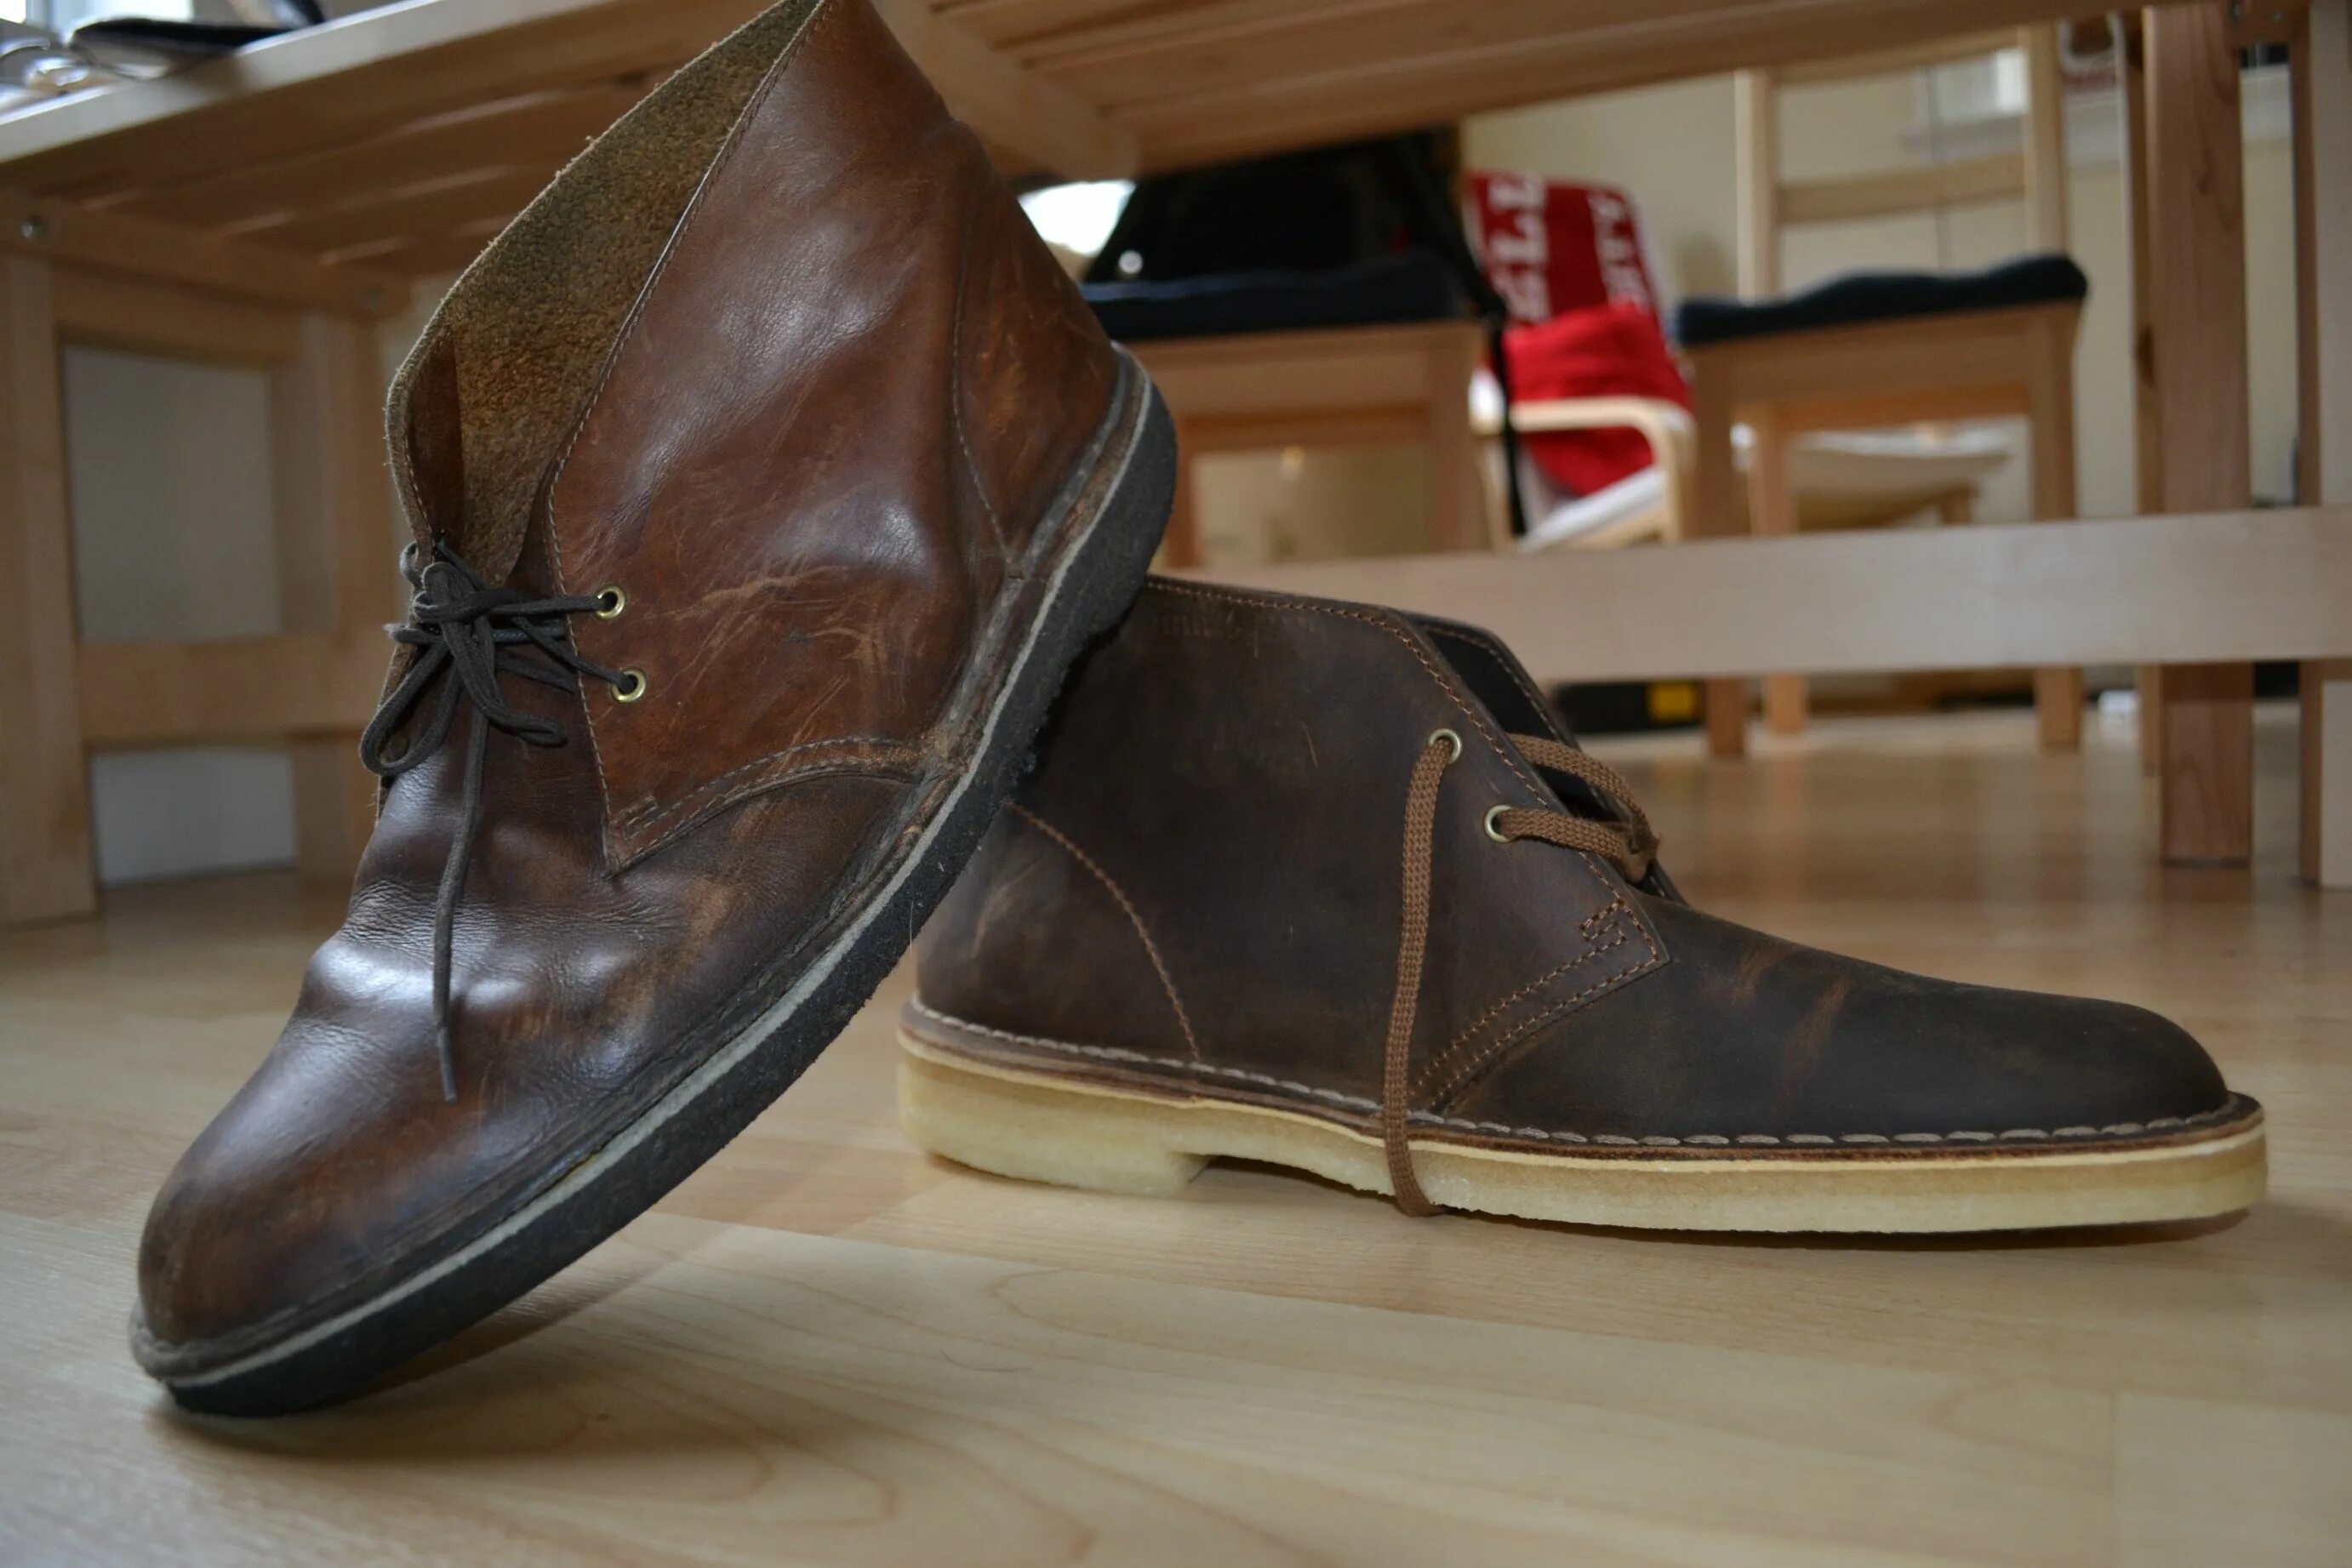 Rr collection цены. Обувь маленьких мужчин. Коллекция обуви 70 годов мужская. Коллекцией обуви Daya. Clarks est 1958.